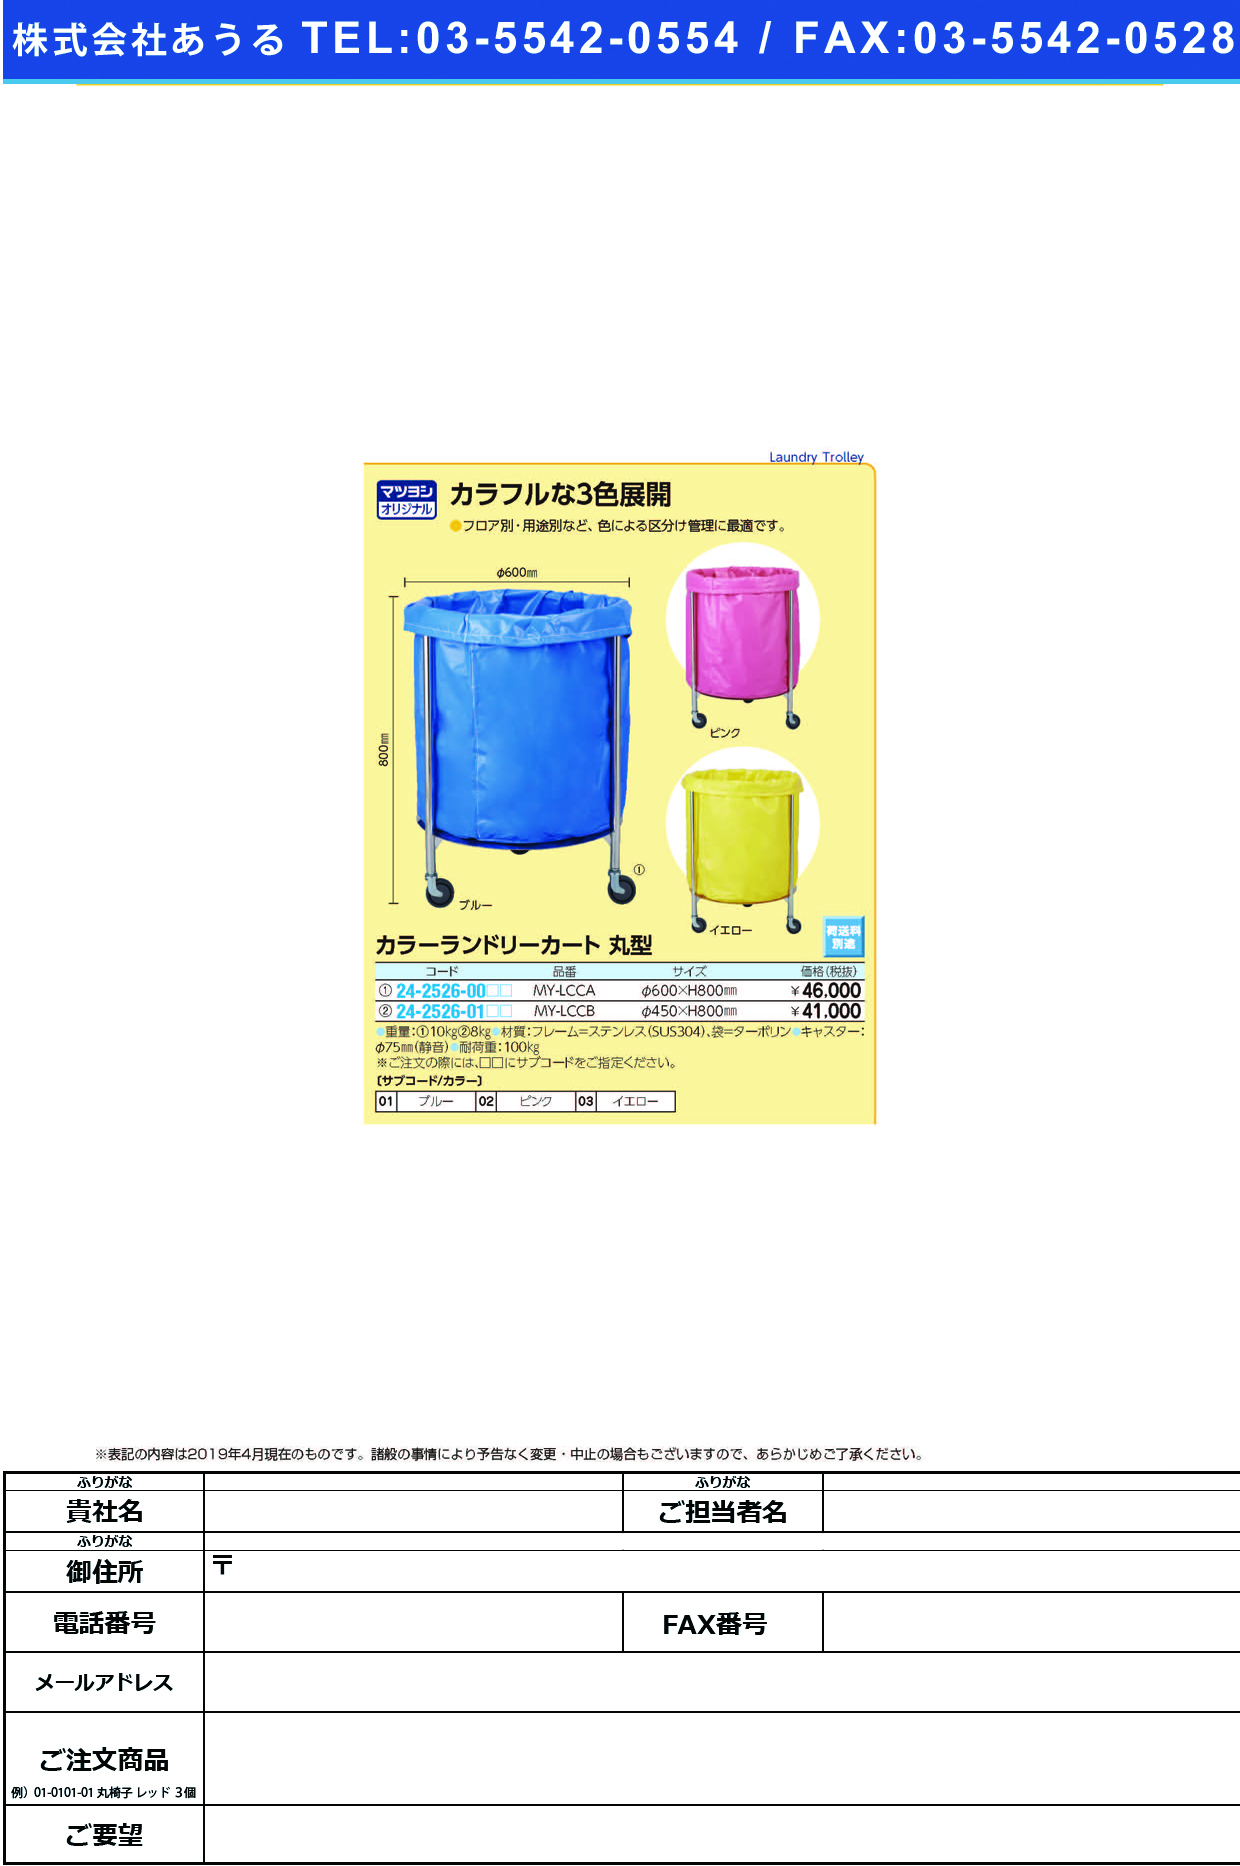 (24-2526-00)カラーランドリーカート（丸型） MY-LCCA(600X800MM) ｶﾗｰﾗﾝﾄﾞﾘｰｶｰﾄﾏﾙｶﾞﾀ ブルー【1台単位】【2019年カタログ商品】